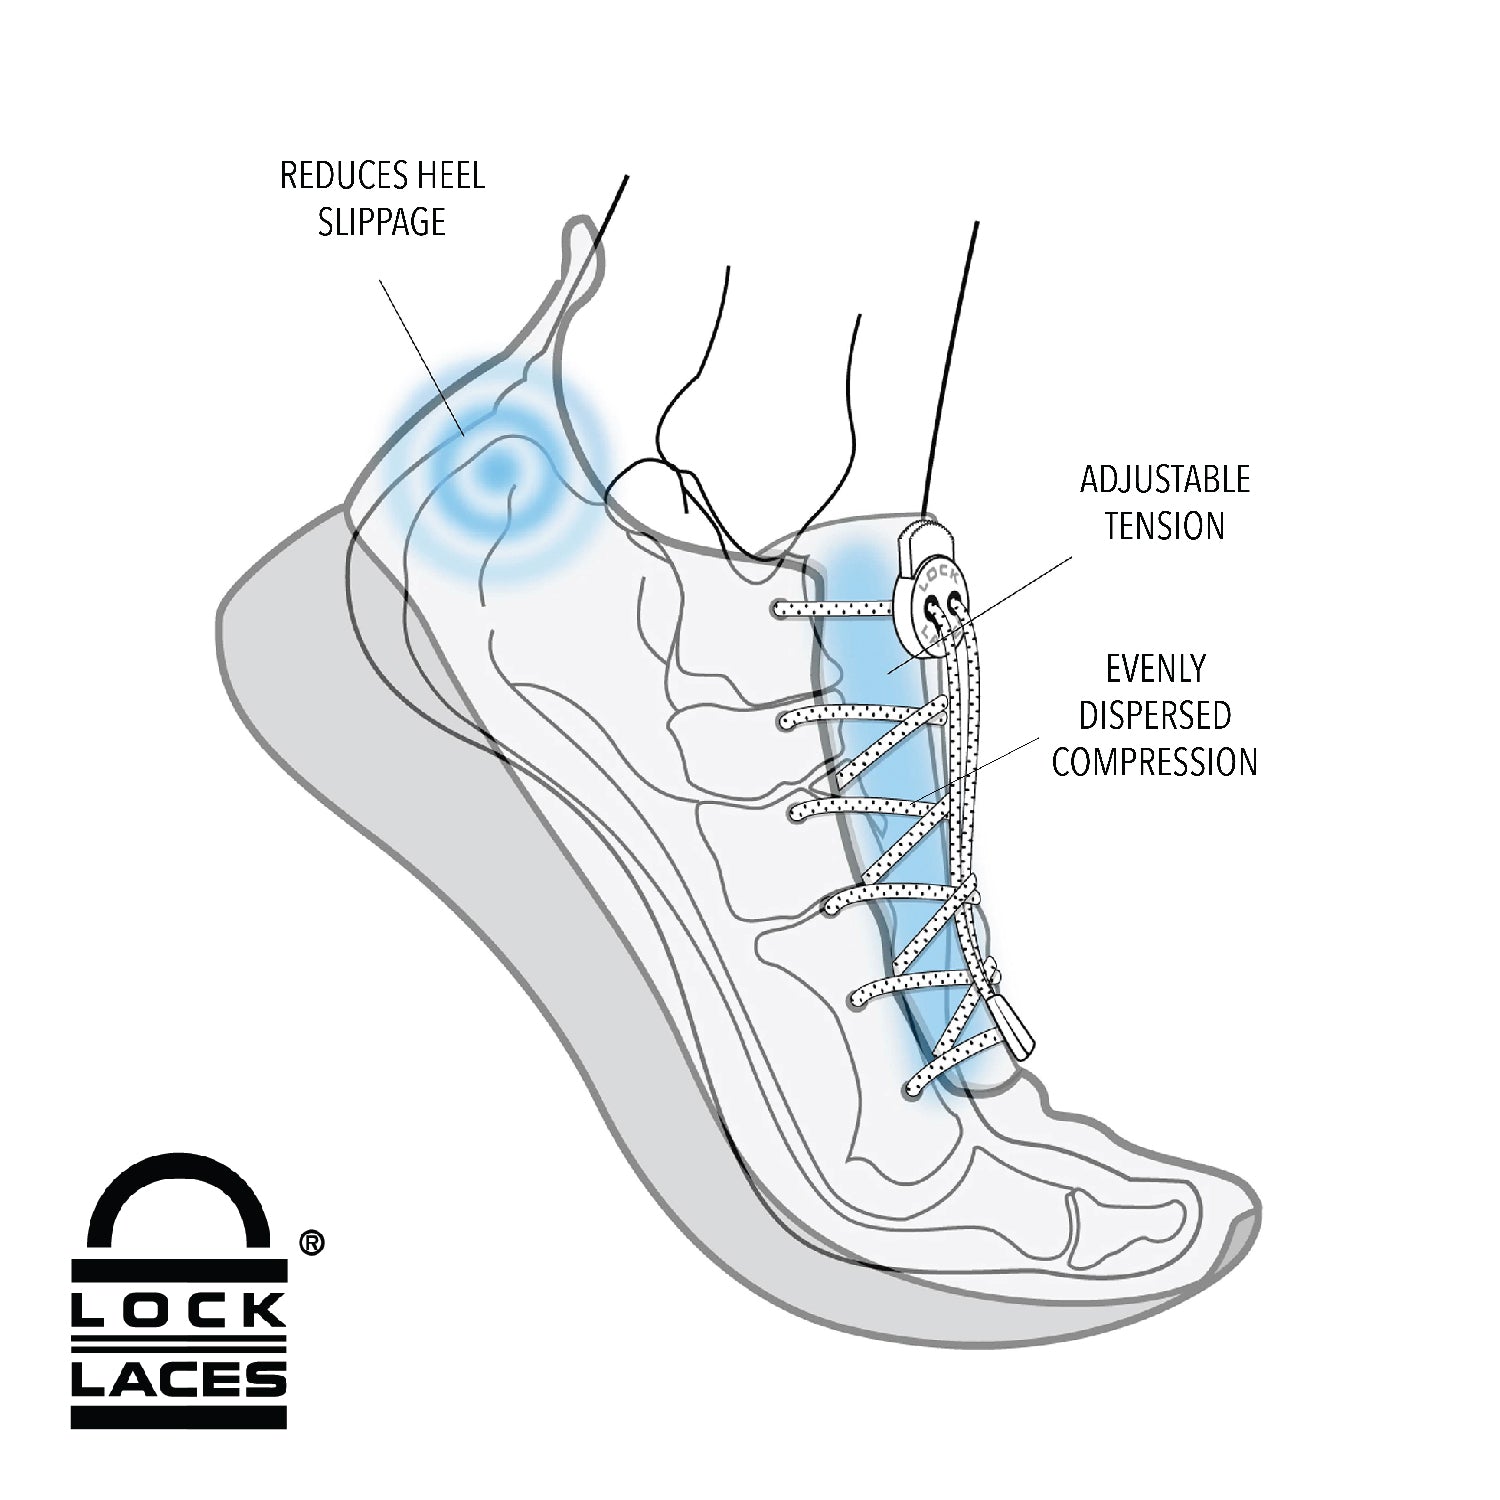 Knotbots | Bling Shoelace Lock Blue / Iridescent